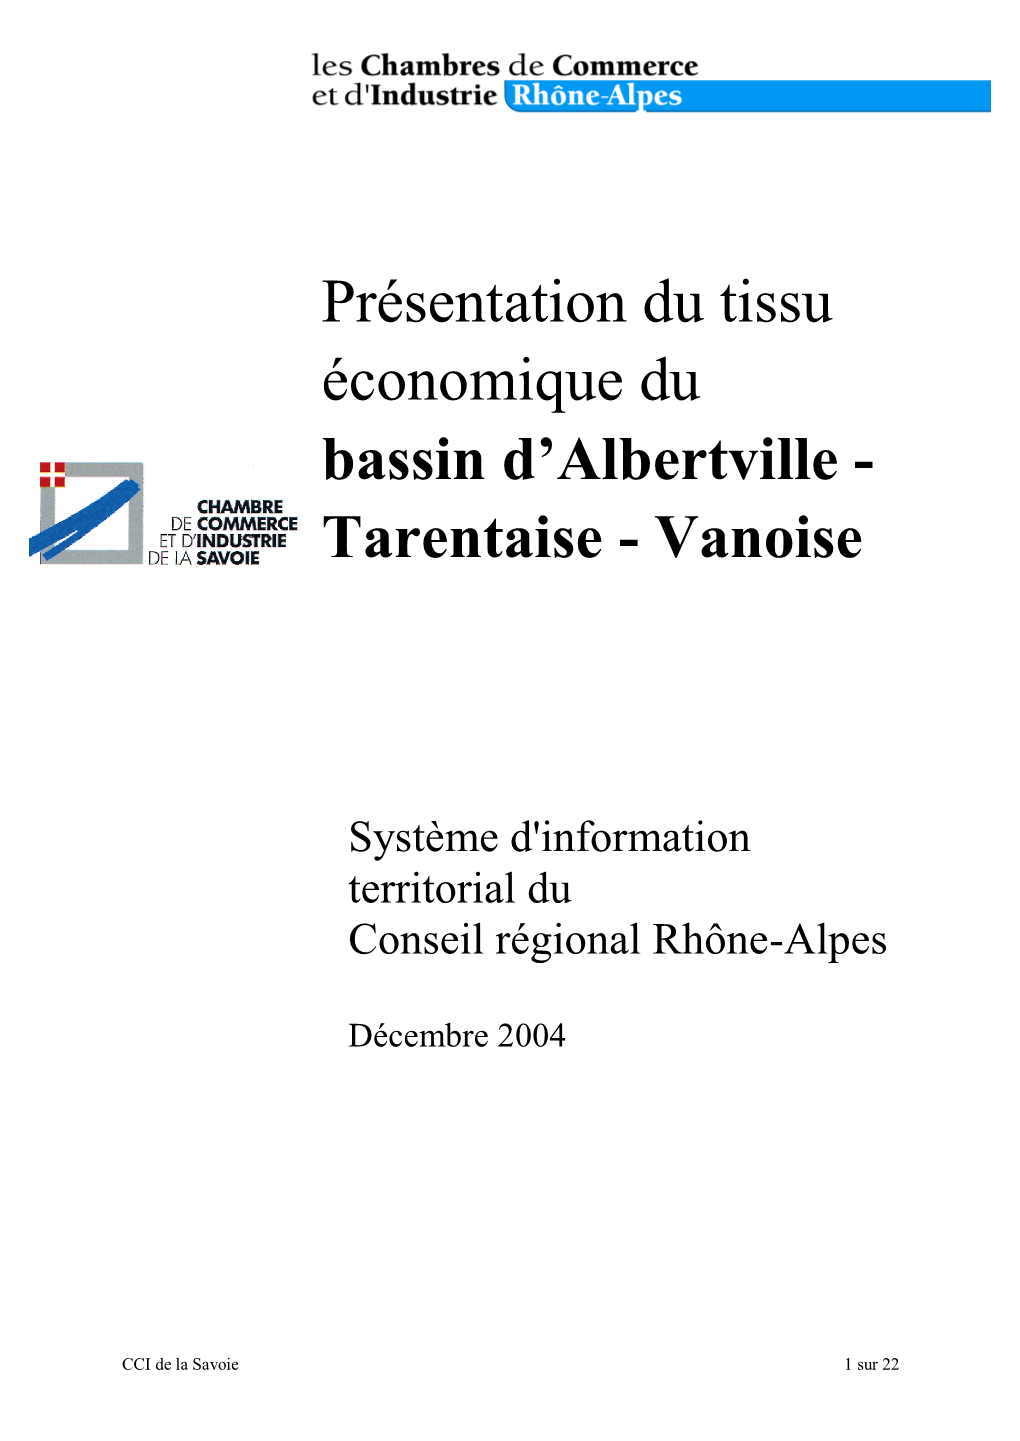 CCI Albertville Tarentaise Vanoise